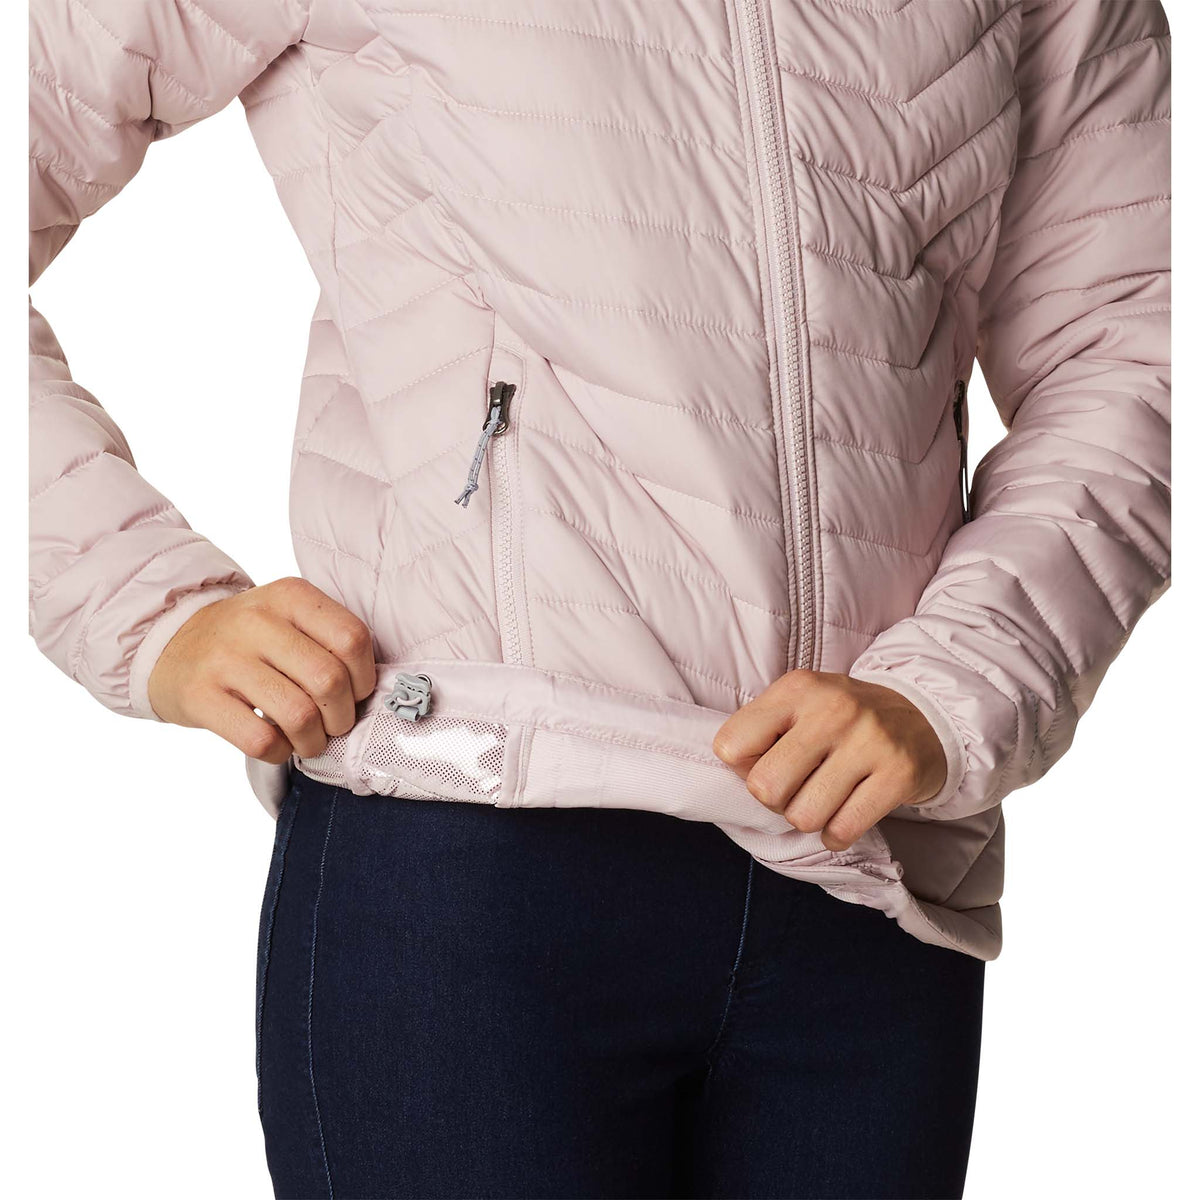 Columbia Powder Lite manteau doudoune sport à capuche rose pour femme taille